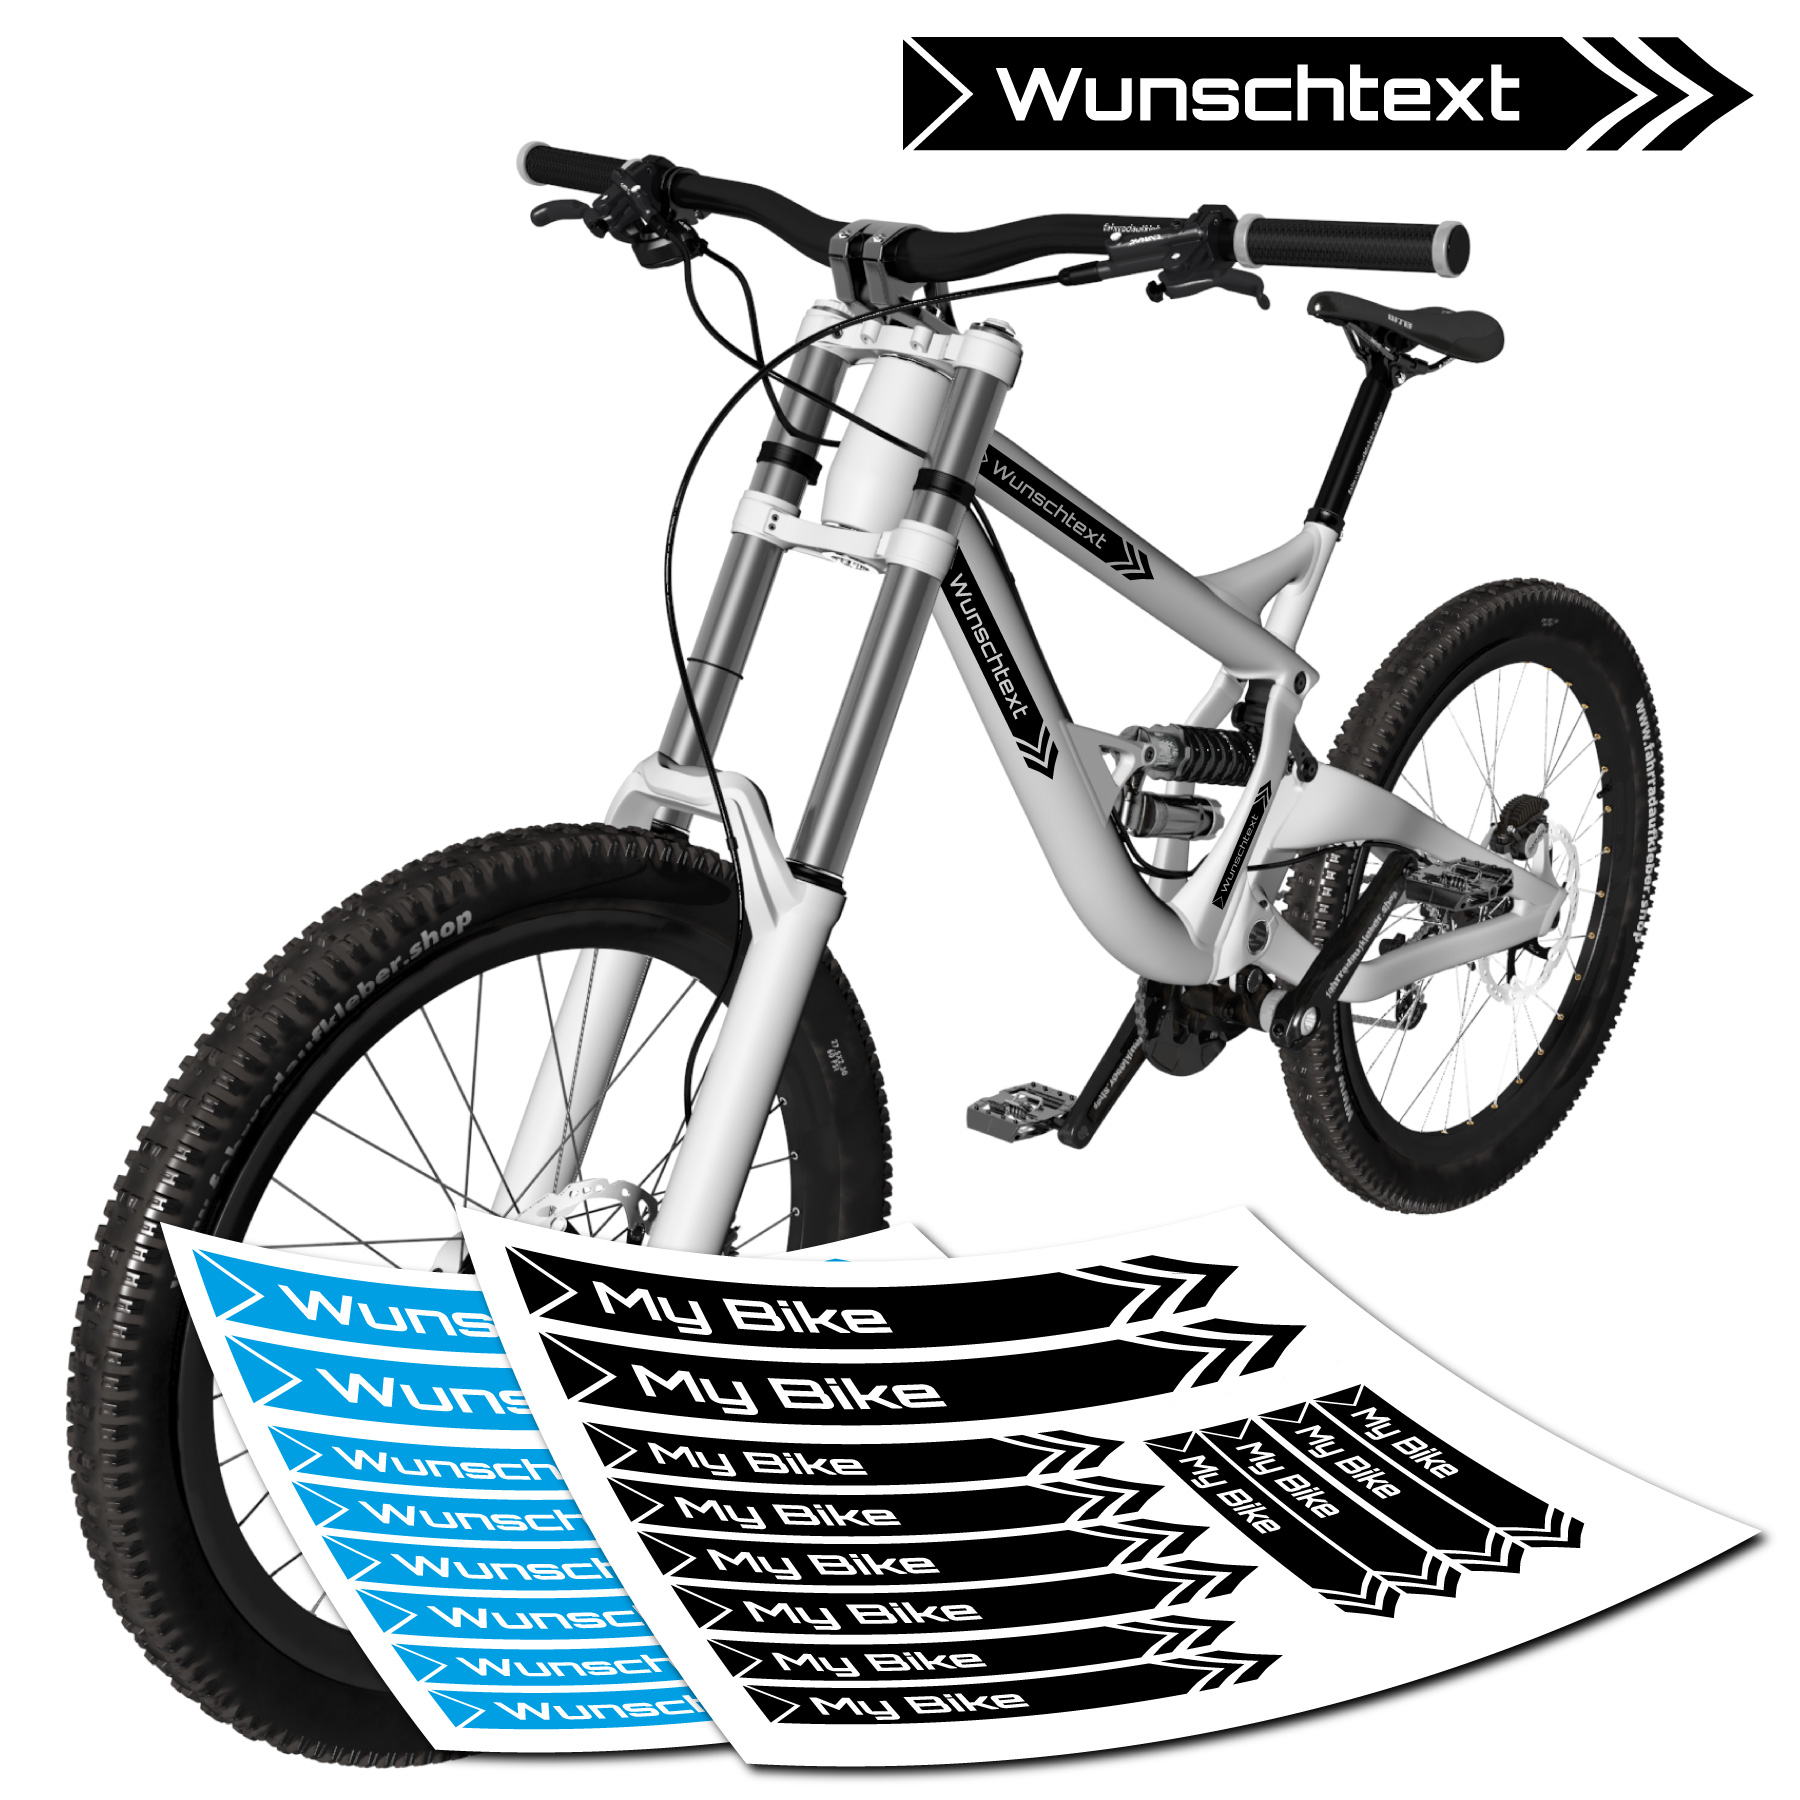 Fahrrad Auto Sticker Text Bike 1000 Schriftarten Name Wasserfeste Aufkleber 